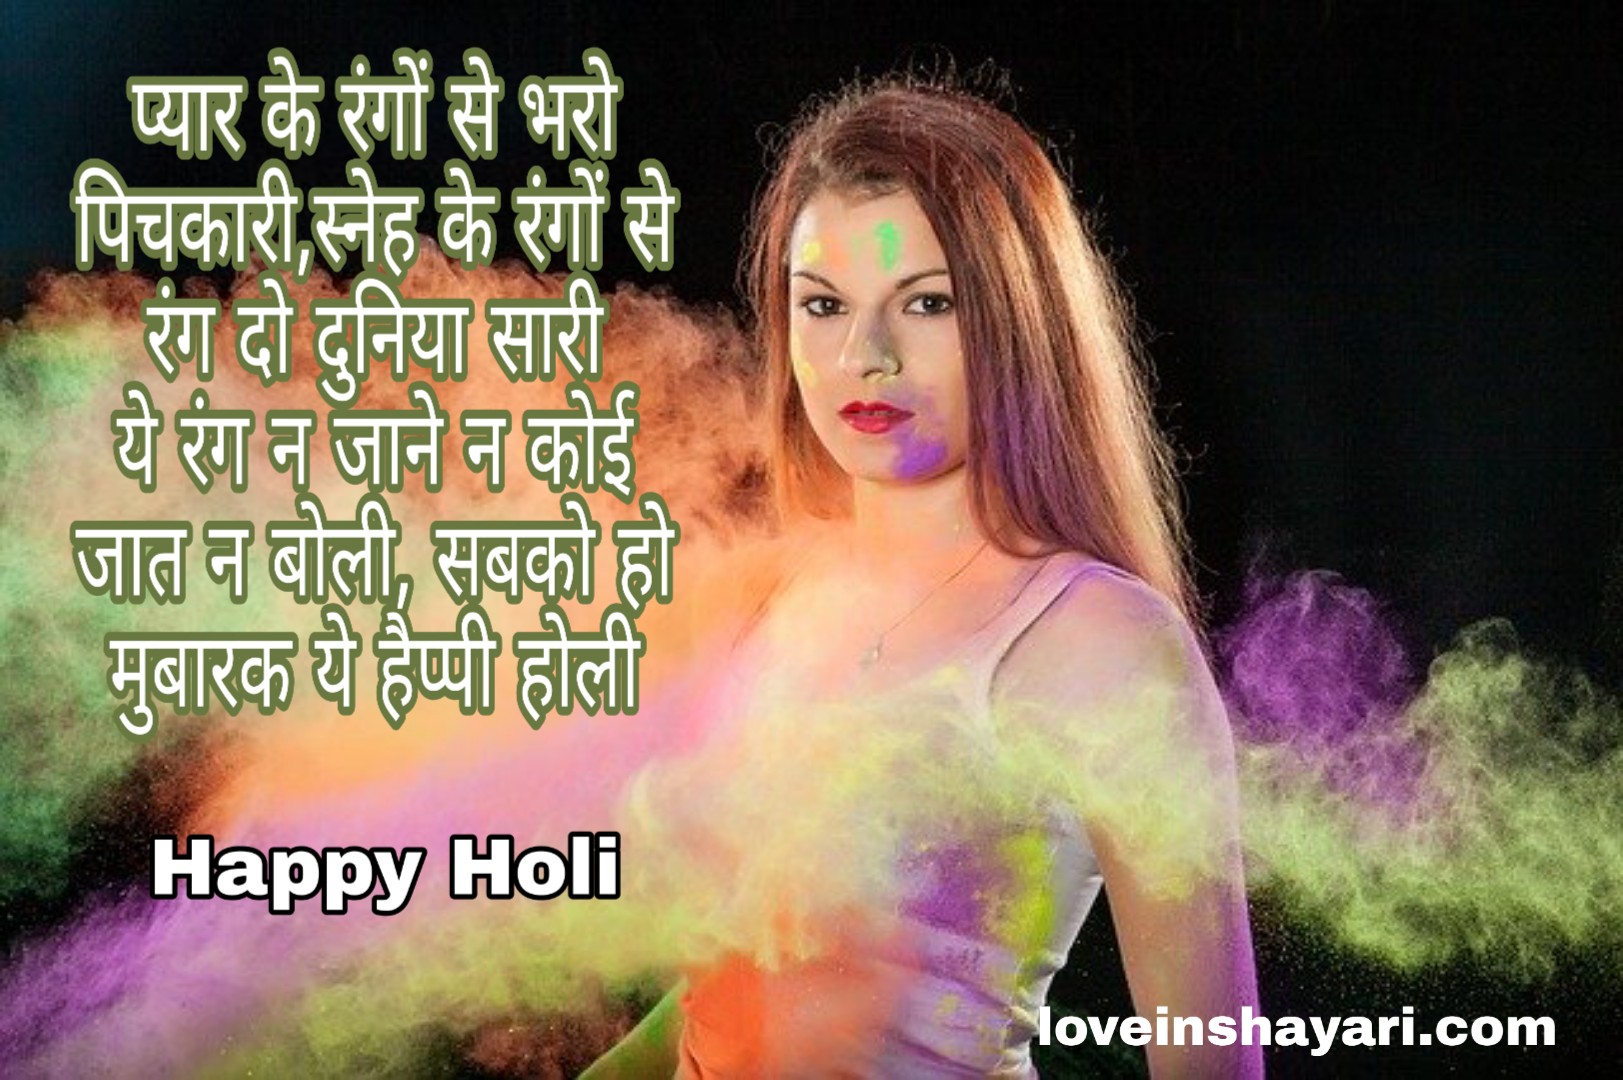 Happy Holi images 2020